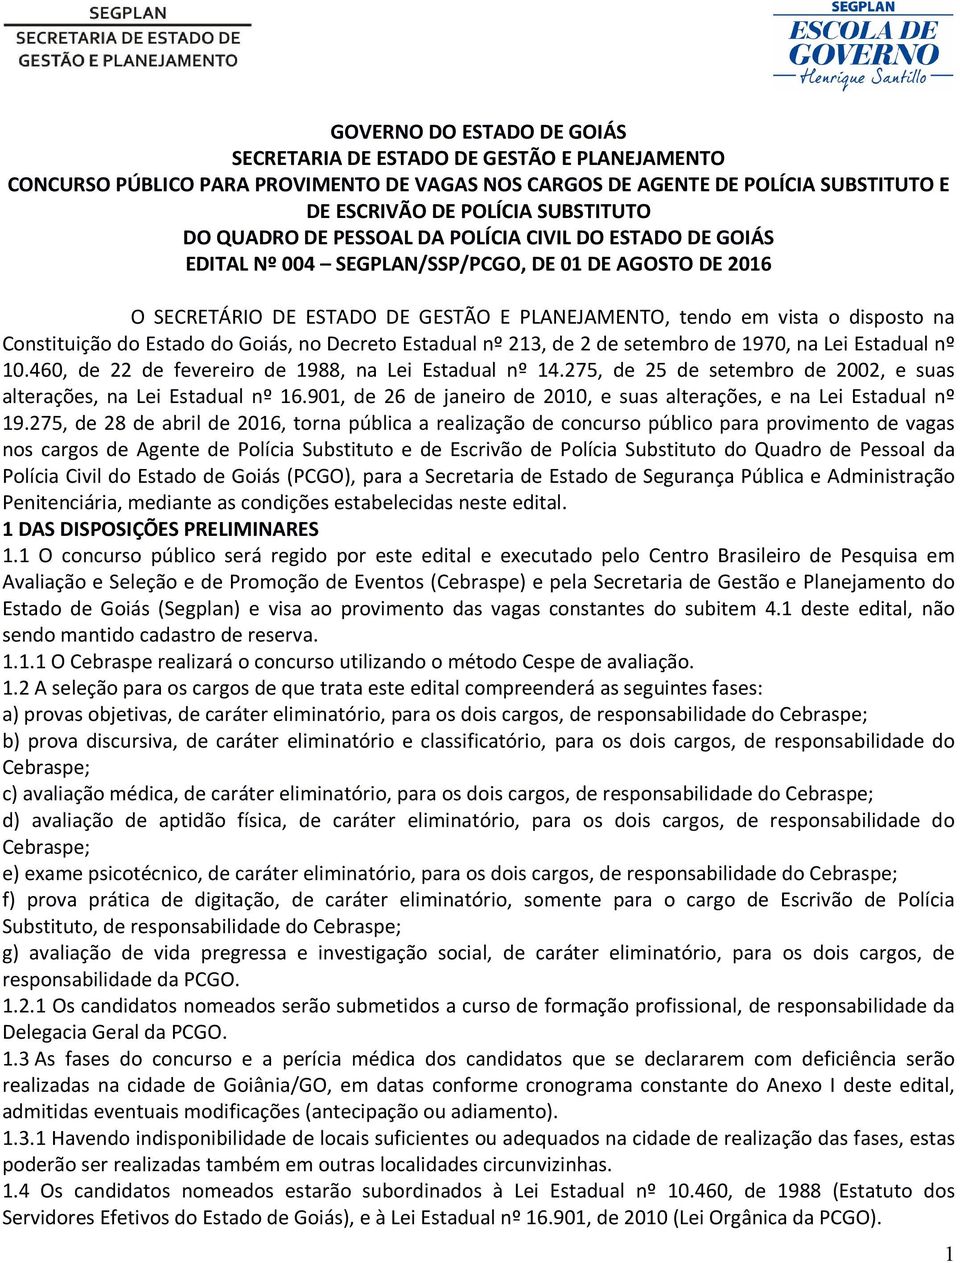 Constituição do Estado do Goiás, no Decreto Estadual nº 213, de 2 de setembro de 1970, na Lei Estadual nº 10.460, de 22 de fevereiro de 1988, na Lei Estadual nº 14.